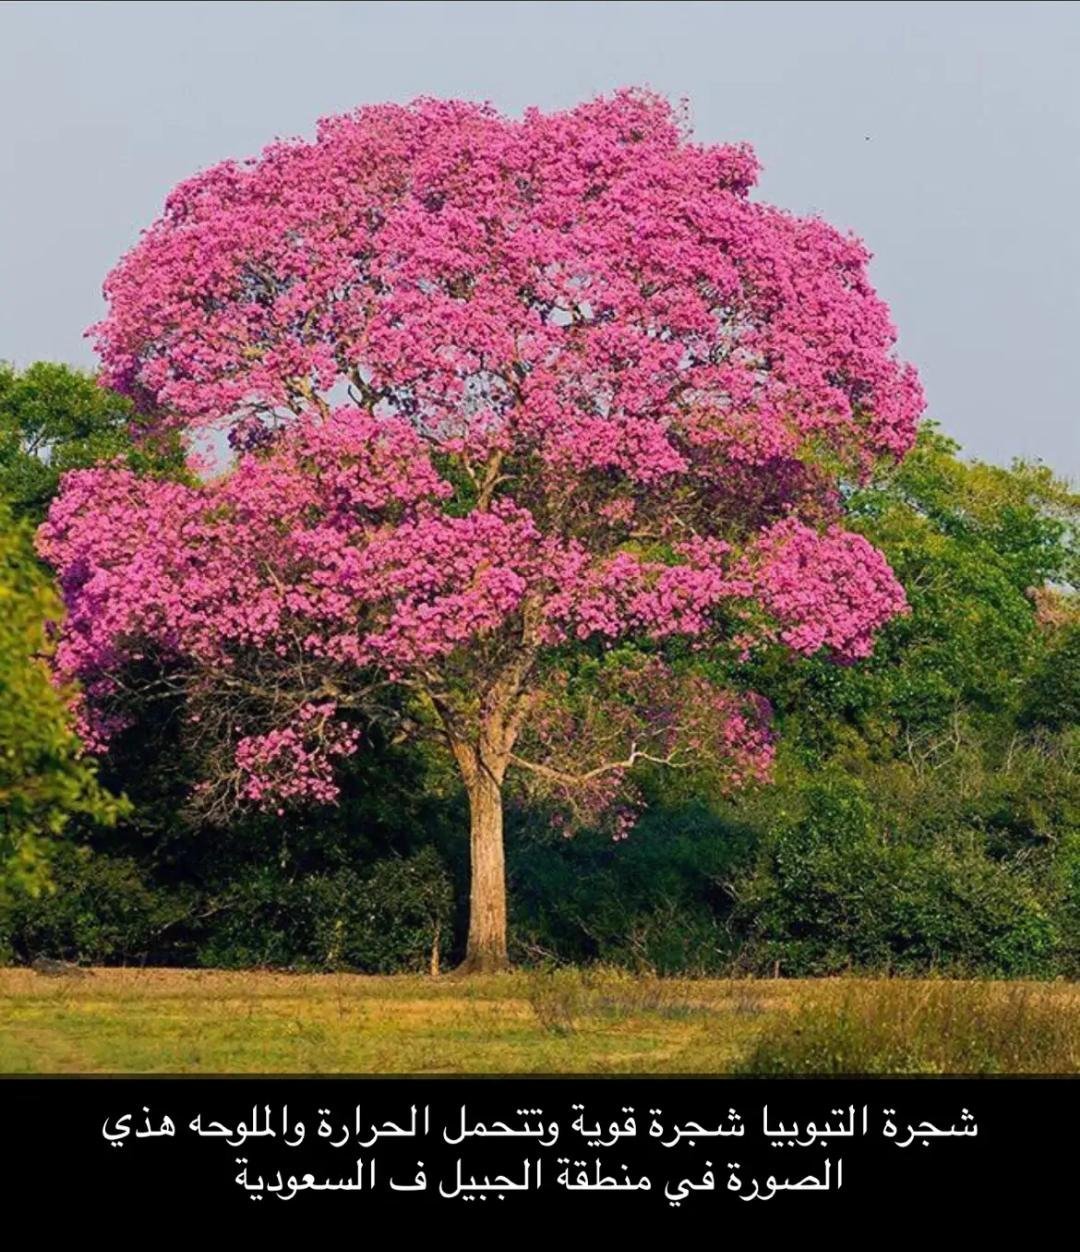 Розовое цветущее дерево название. Табебуйя дерево. Муравьиное дерево табебуйя. Табебуйя розовая (Tabebuia rosea). Муравьнле деркво табибуйа.